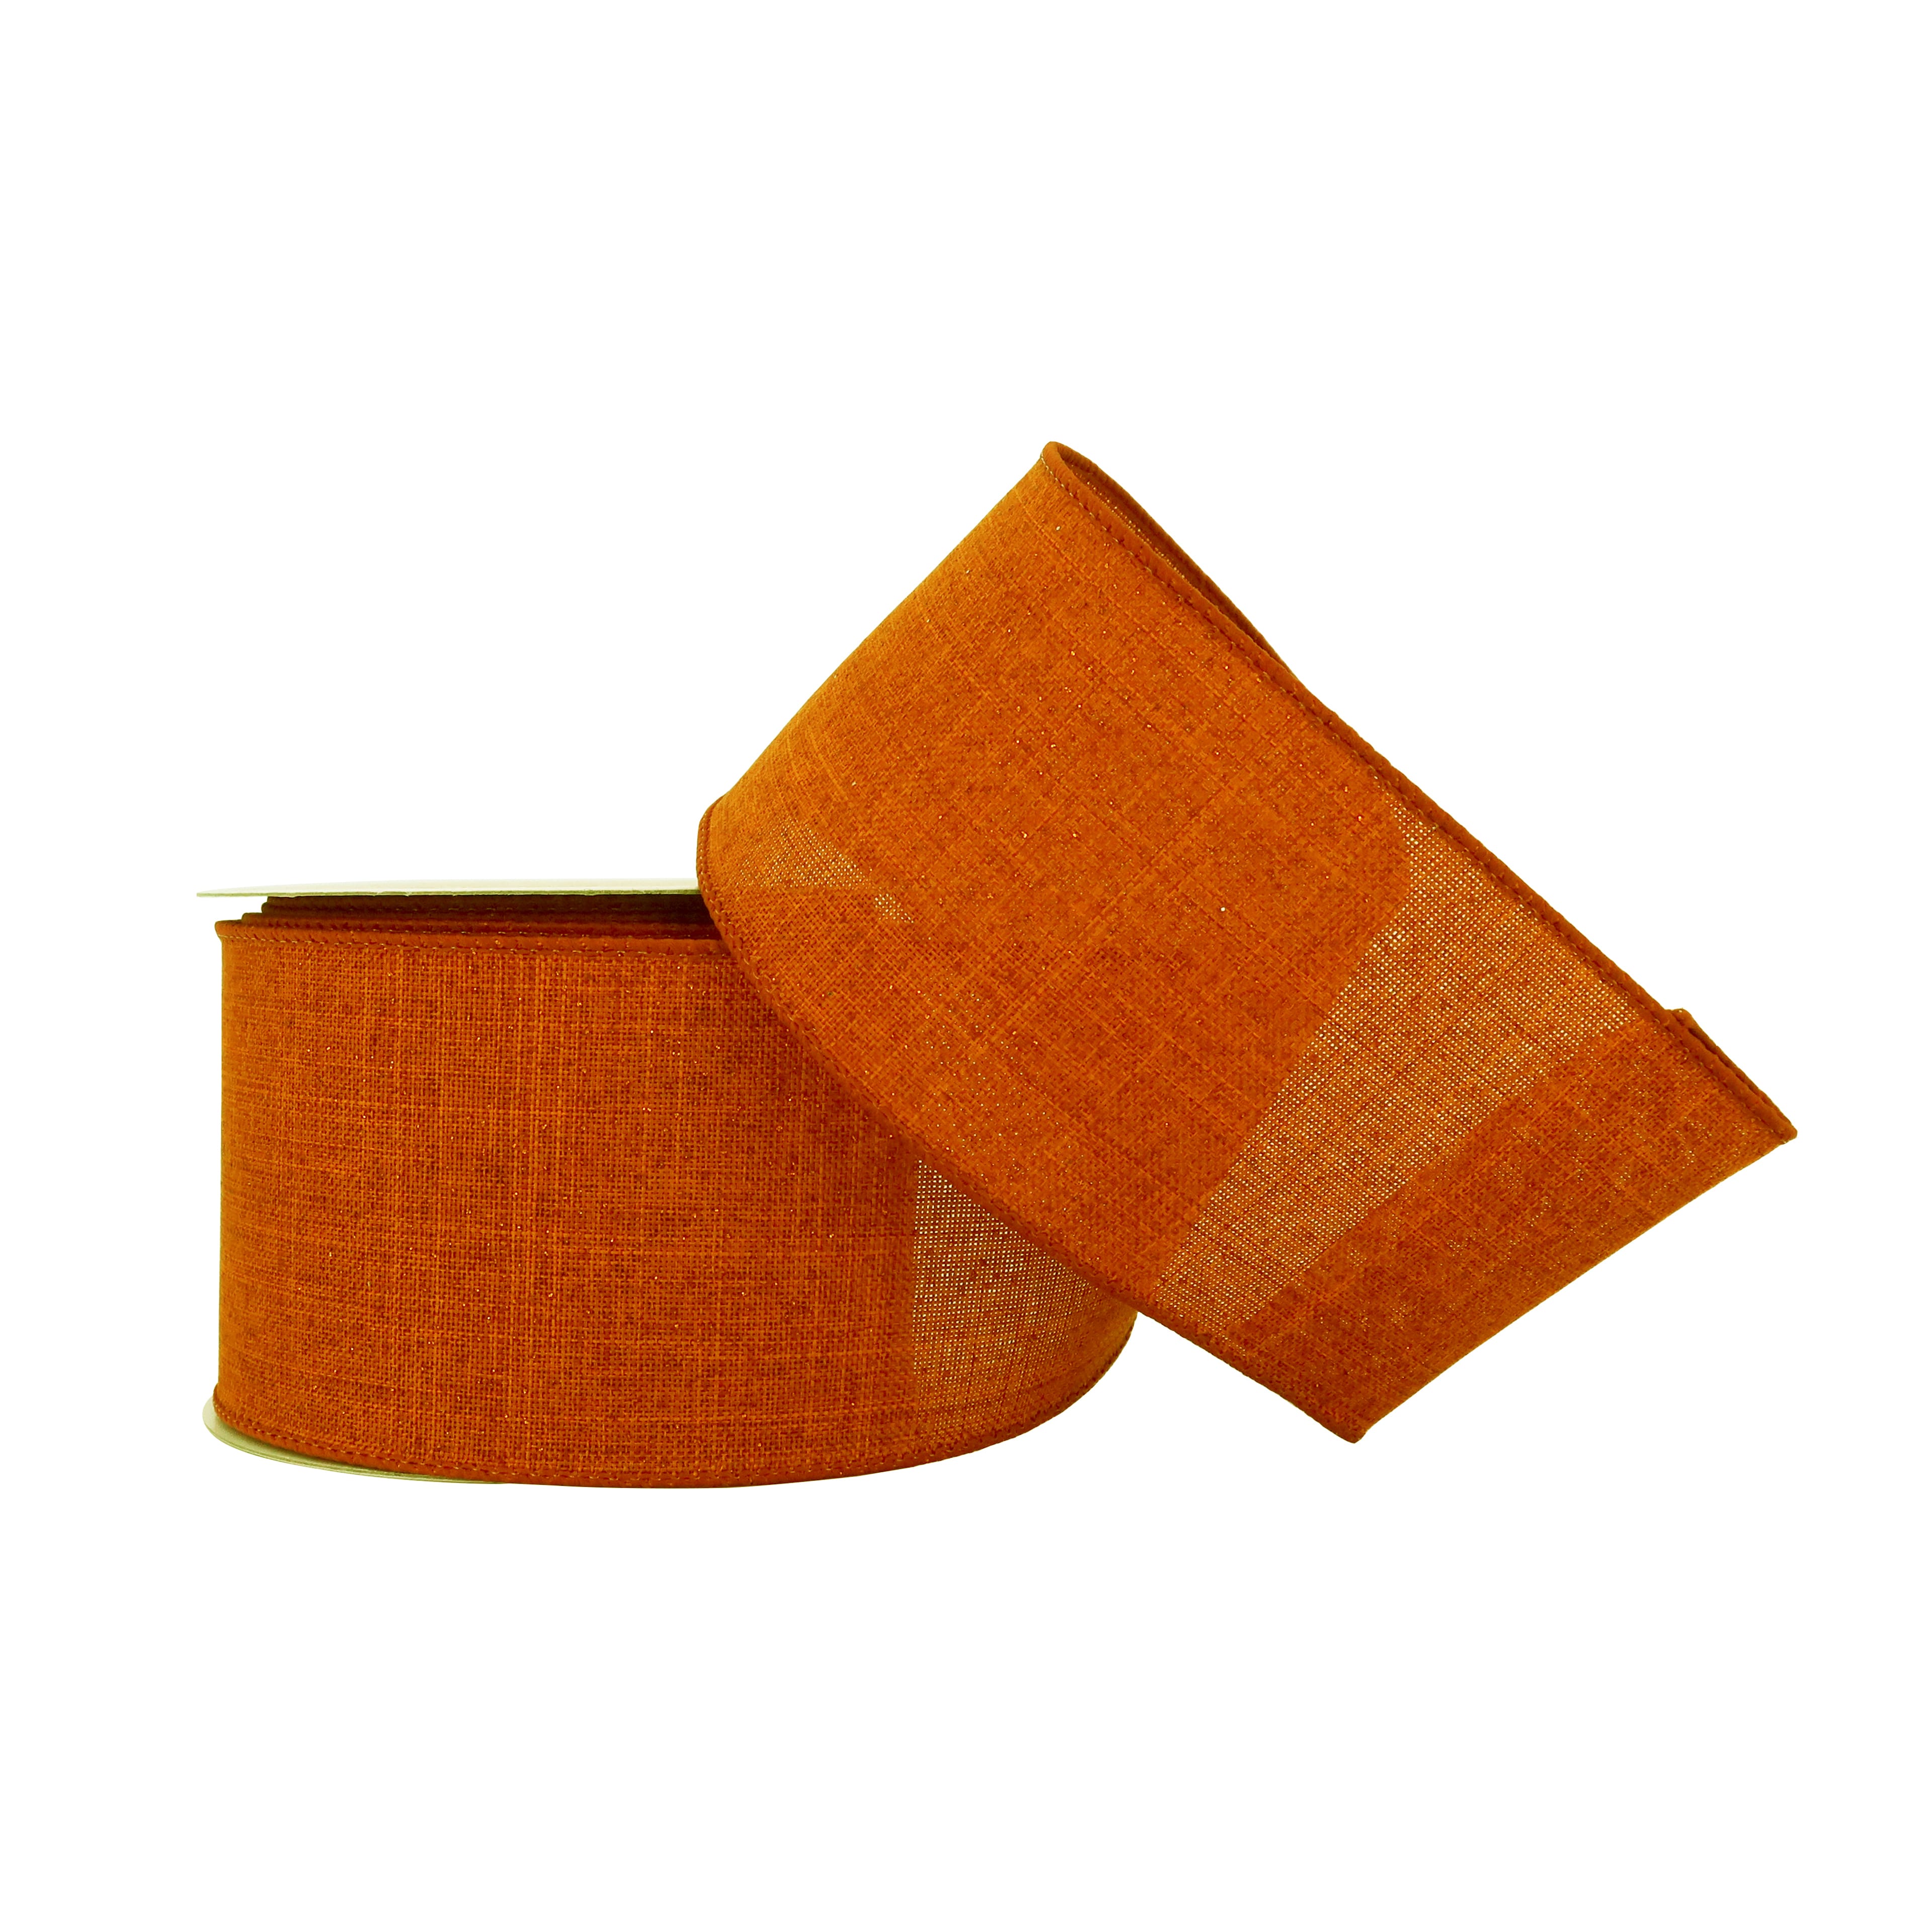 2.5&#x22; x 20ft. Orange Glitter Wired Faux Linen Ribbon by Celebrate It&#xAE; Fall